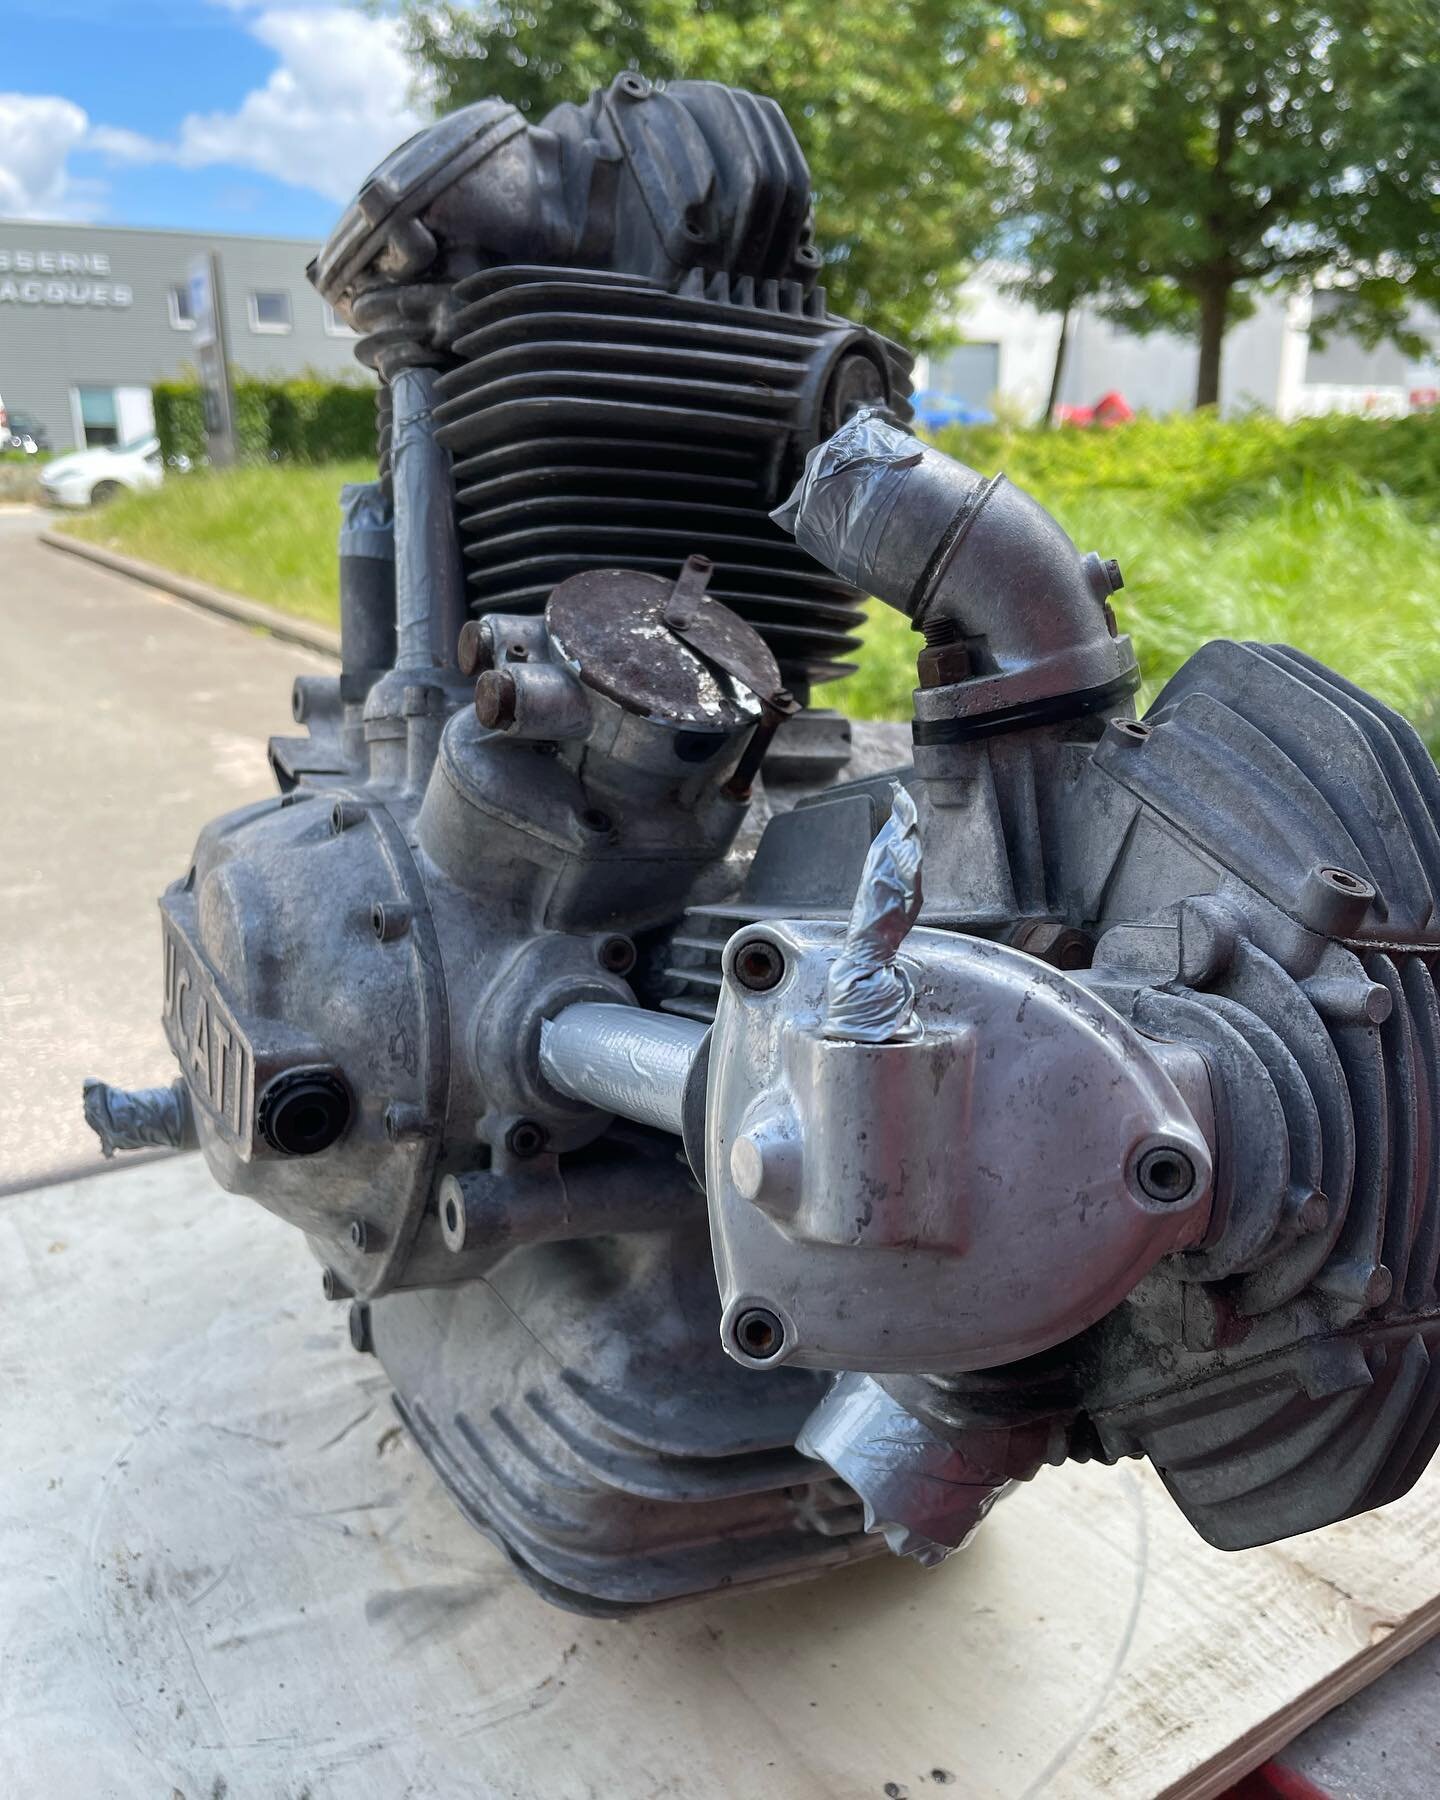 Vaporblasting sur ce beau moteur de Ducati 750 super sport de 1974🤩 

Je vous rassure, le moteur va &ecirc;tre enti&egrave;rement d&eacute;monter par le client. 

Powdercoating 🎨
C&eacute;ramique 🎨
Sablage ⌛️
Anodisation 🎨
Vaporblasting 💦
#ducat